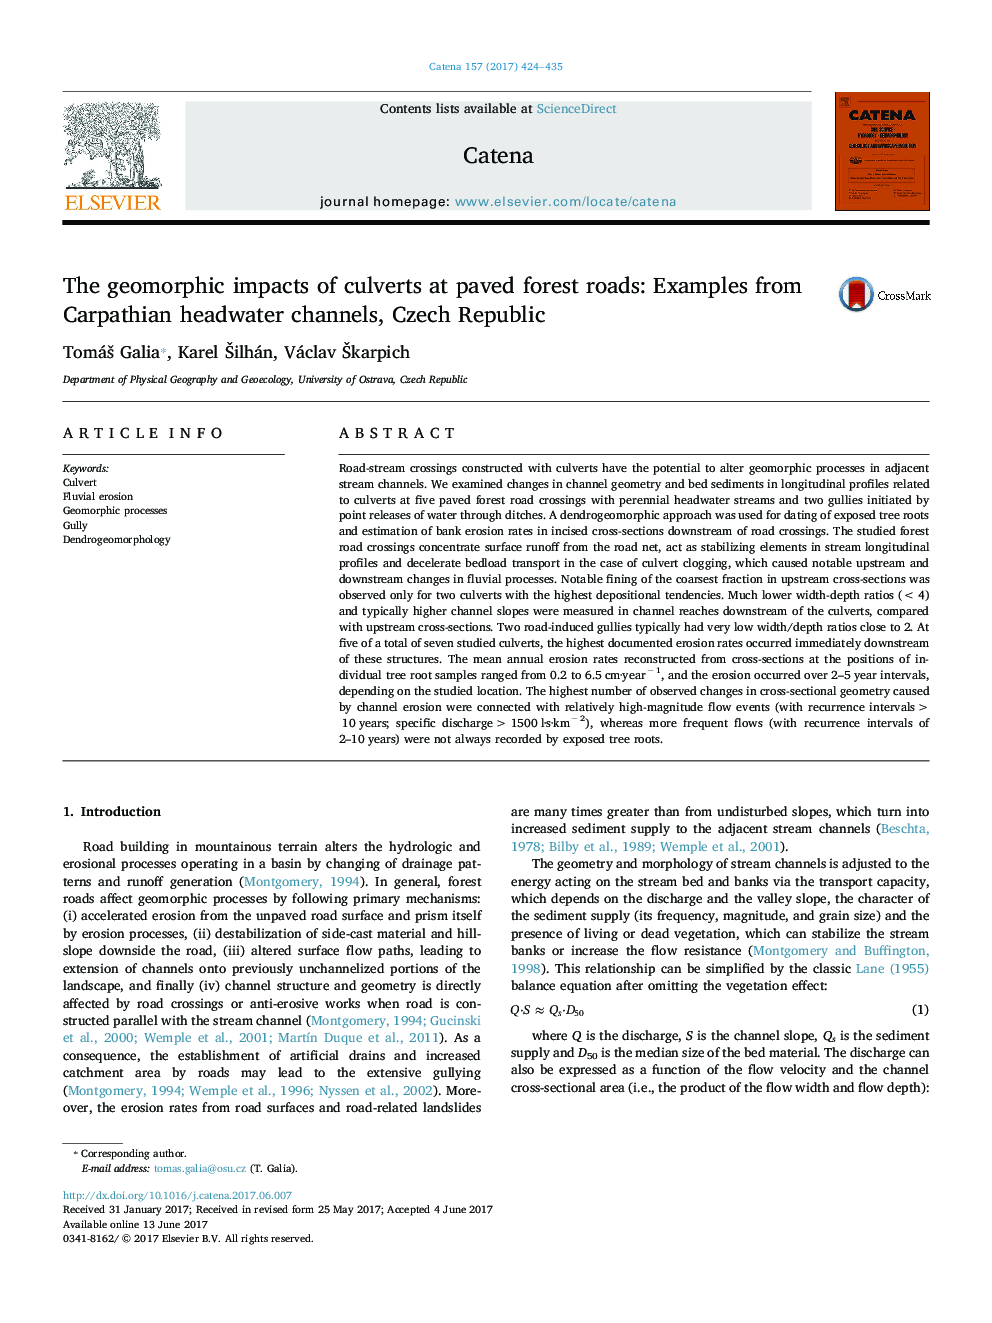 اثرات ژئومورفیک جرثقیل ها در جاده های جنگل گودال: نمونه هایی از کانال های سرریز کارپات، جمهوری چک 